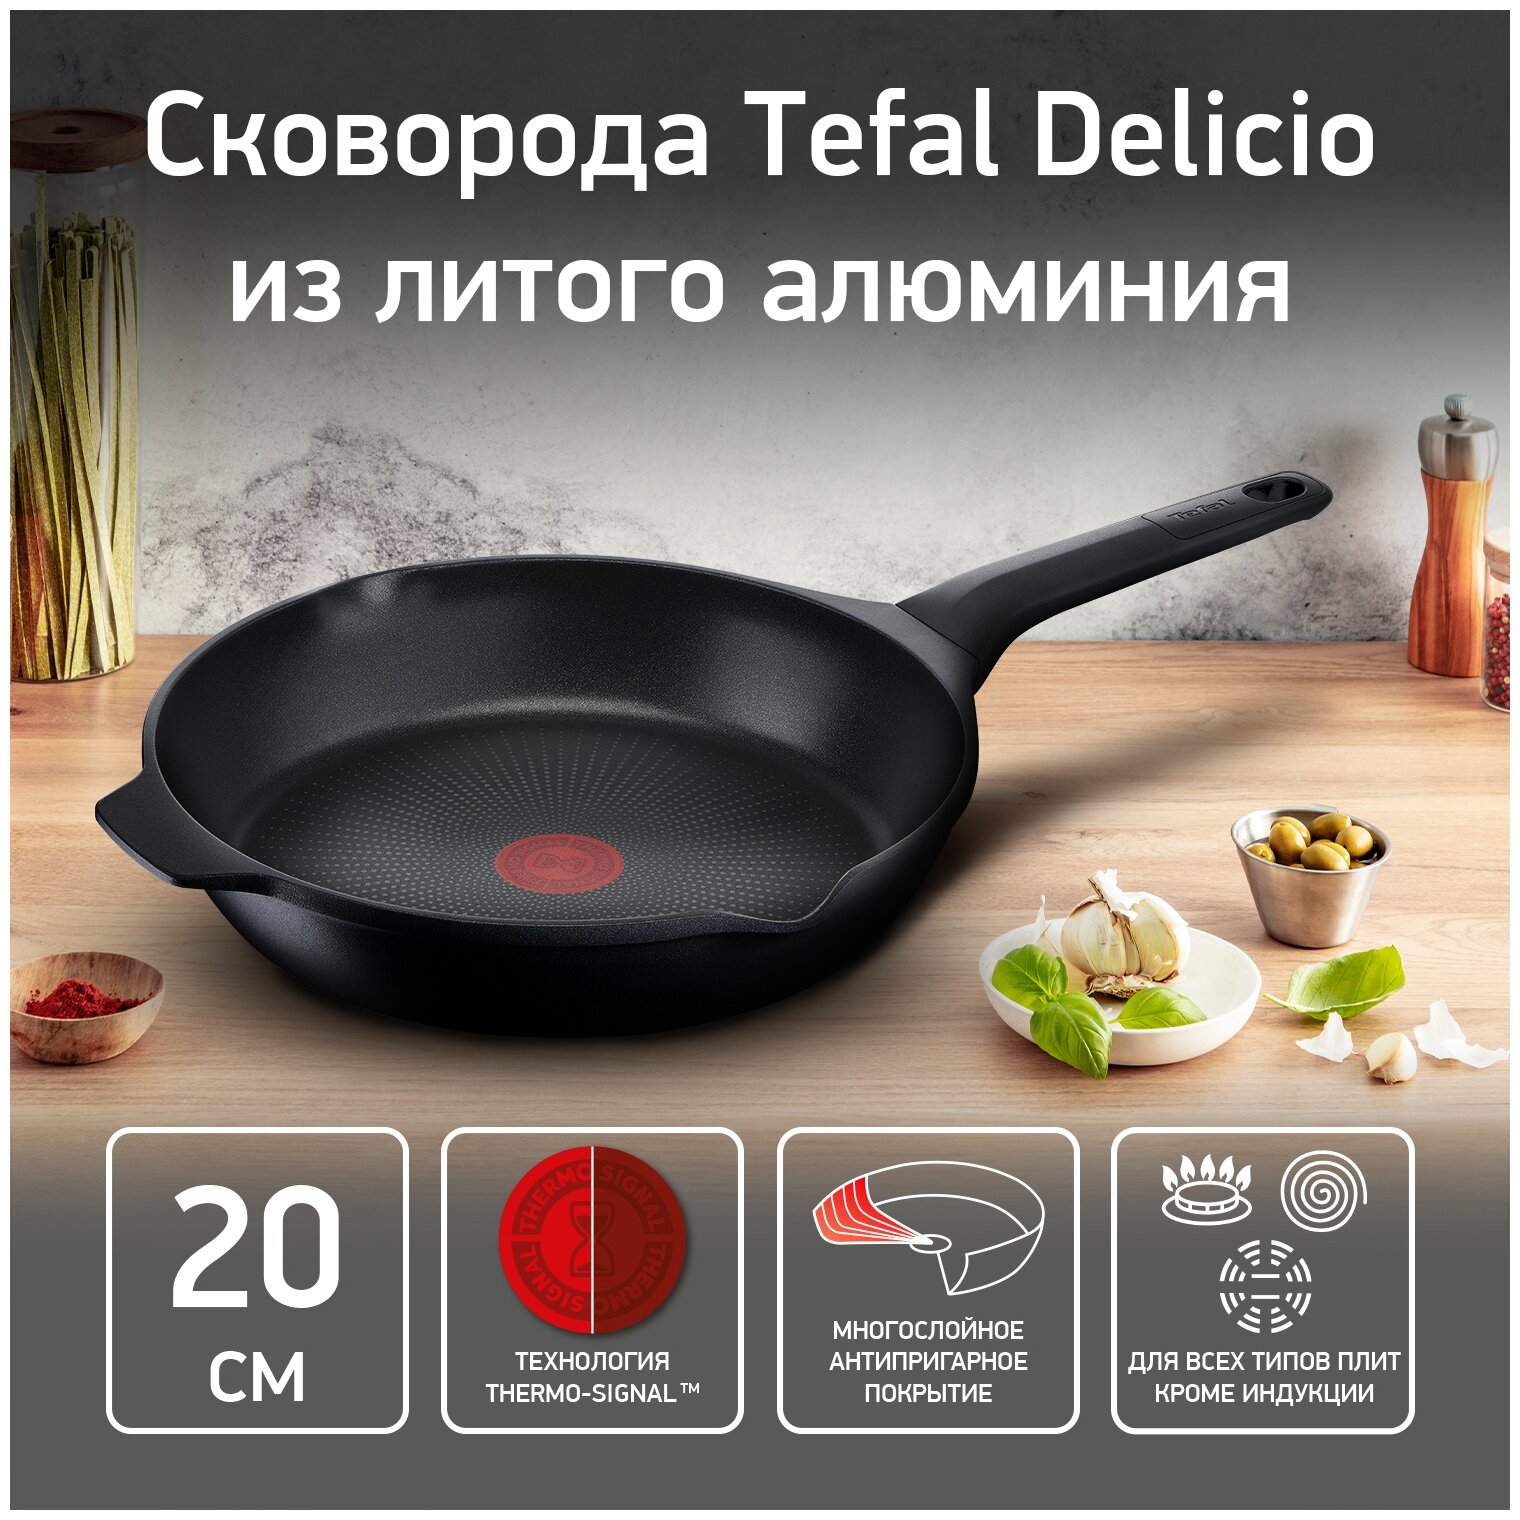 Сковорода Tefal Delicio, диаметр 20 см